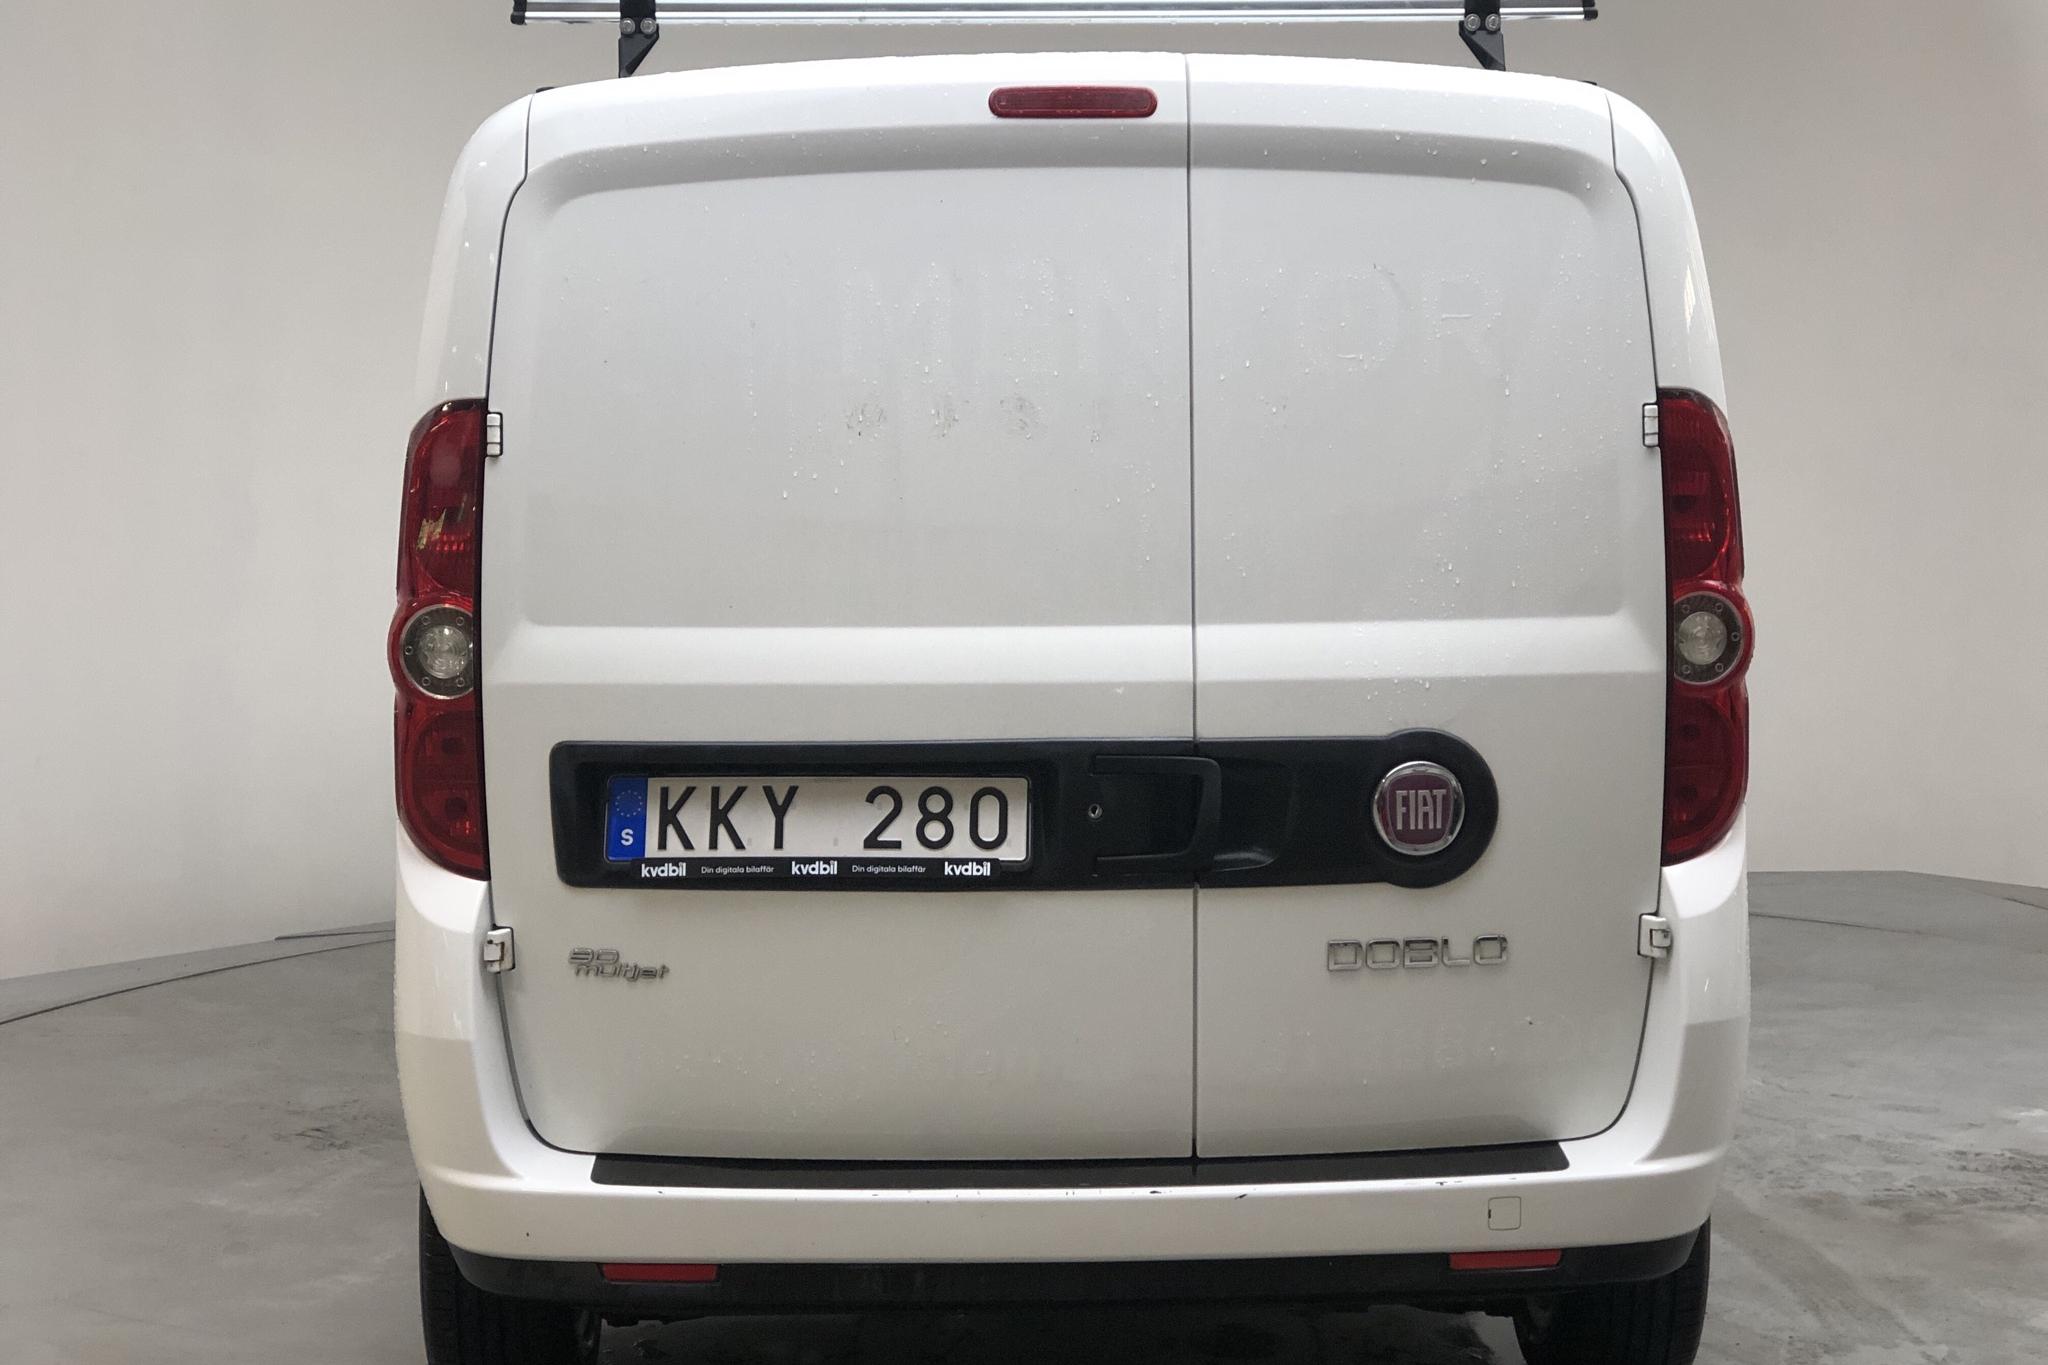 Fiat Doblo Cargo 1.3 Multijet (90hk) - 137 420 km - Manual - white - 2013